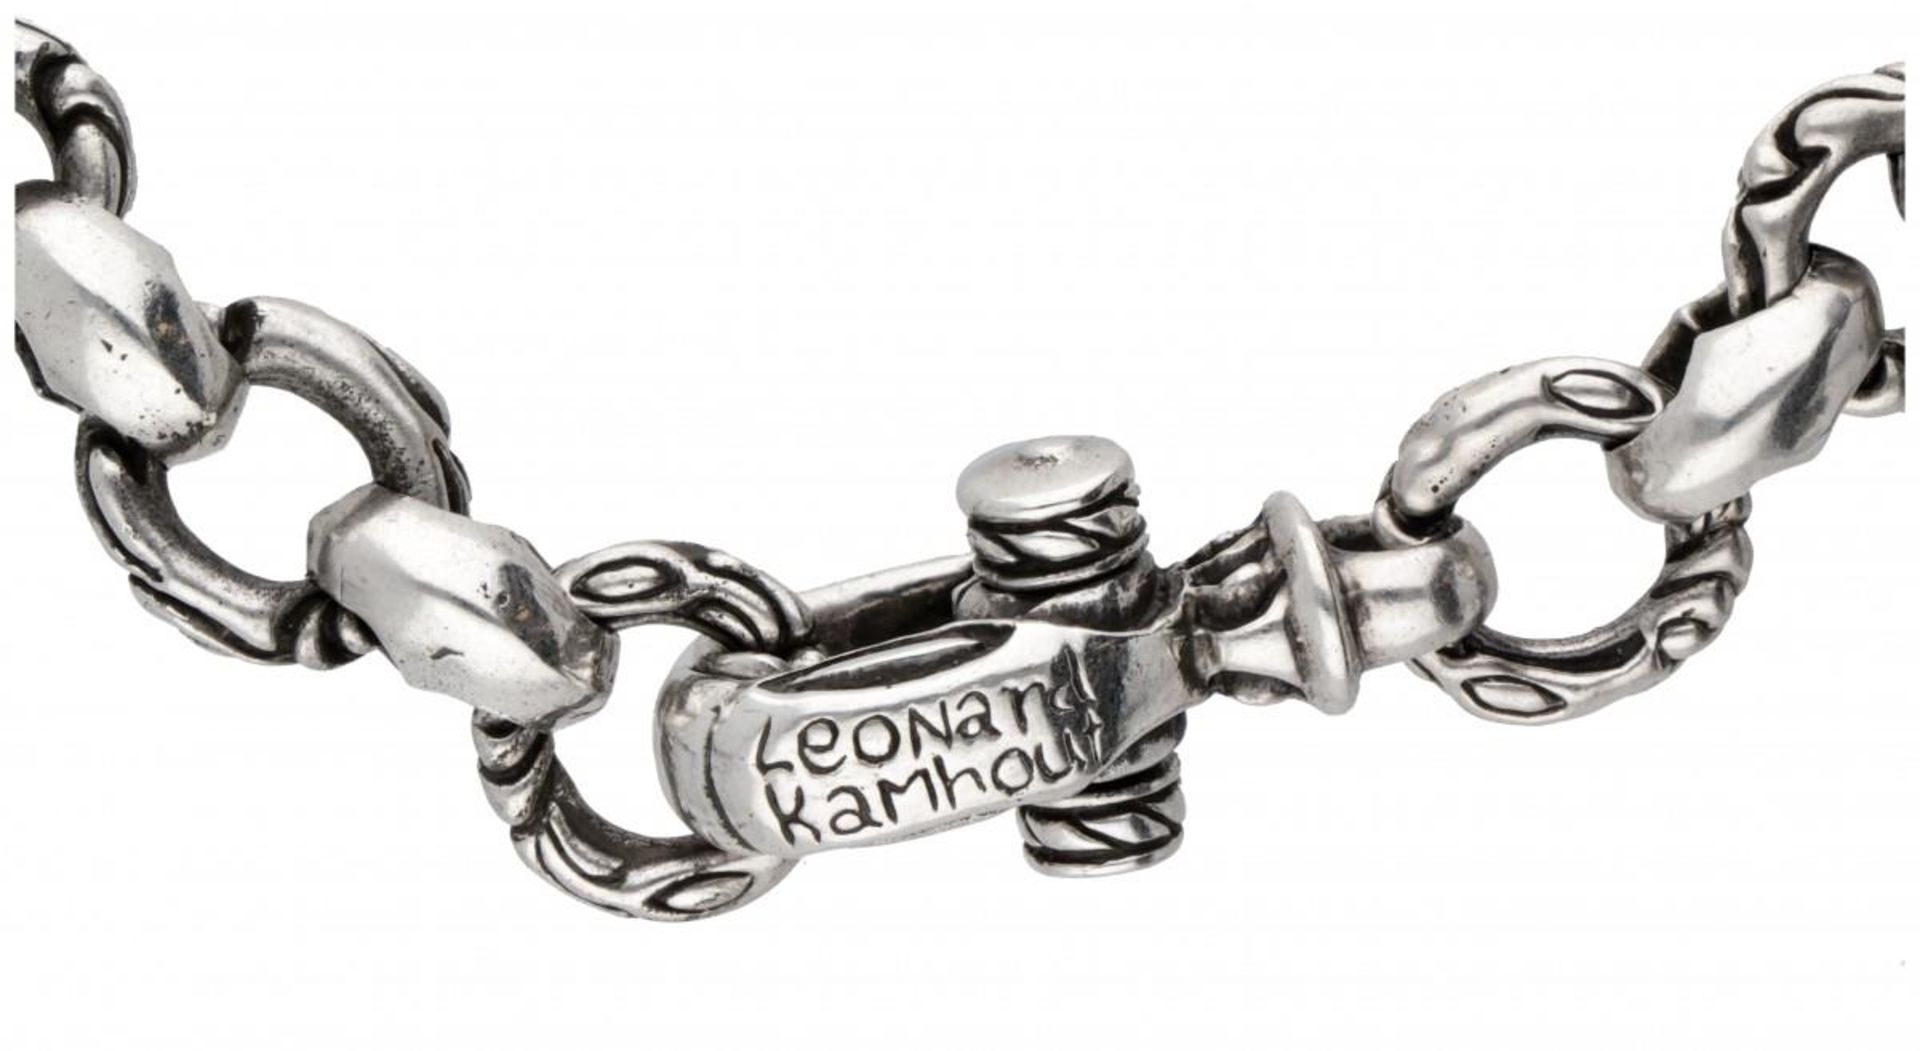 Silver Leonard Kamhout 'Lone Ones' brutalist jasseron link necklace - 925/1000. - Image 3 of 3